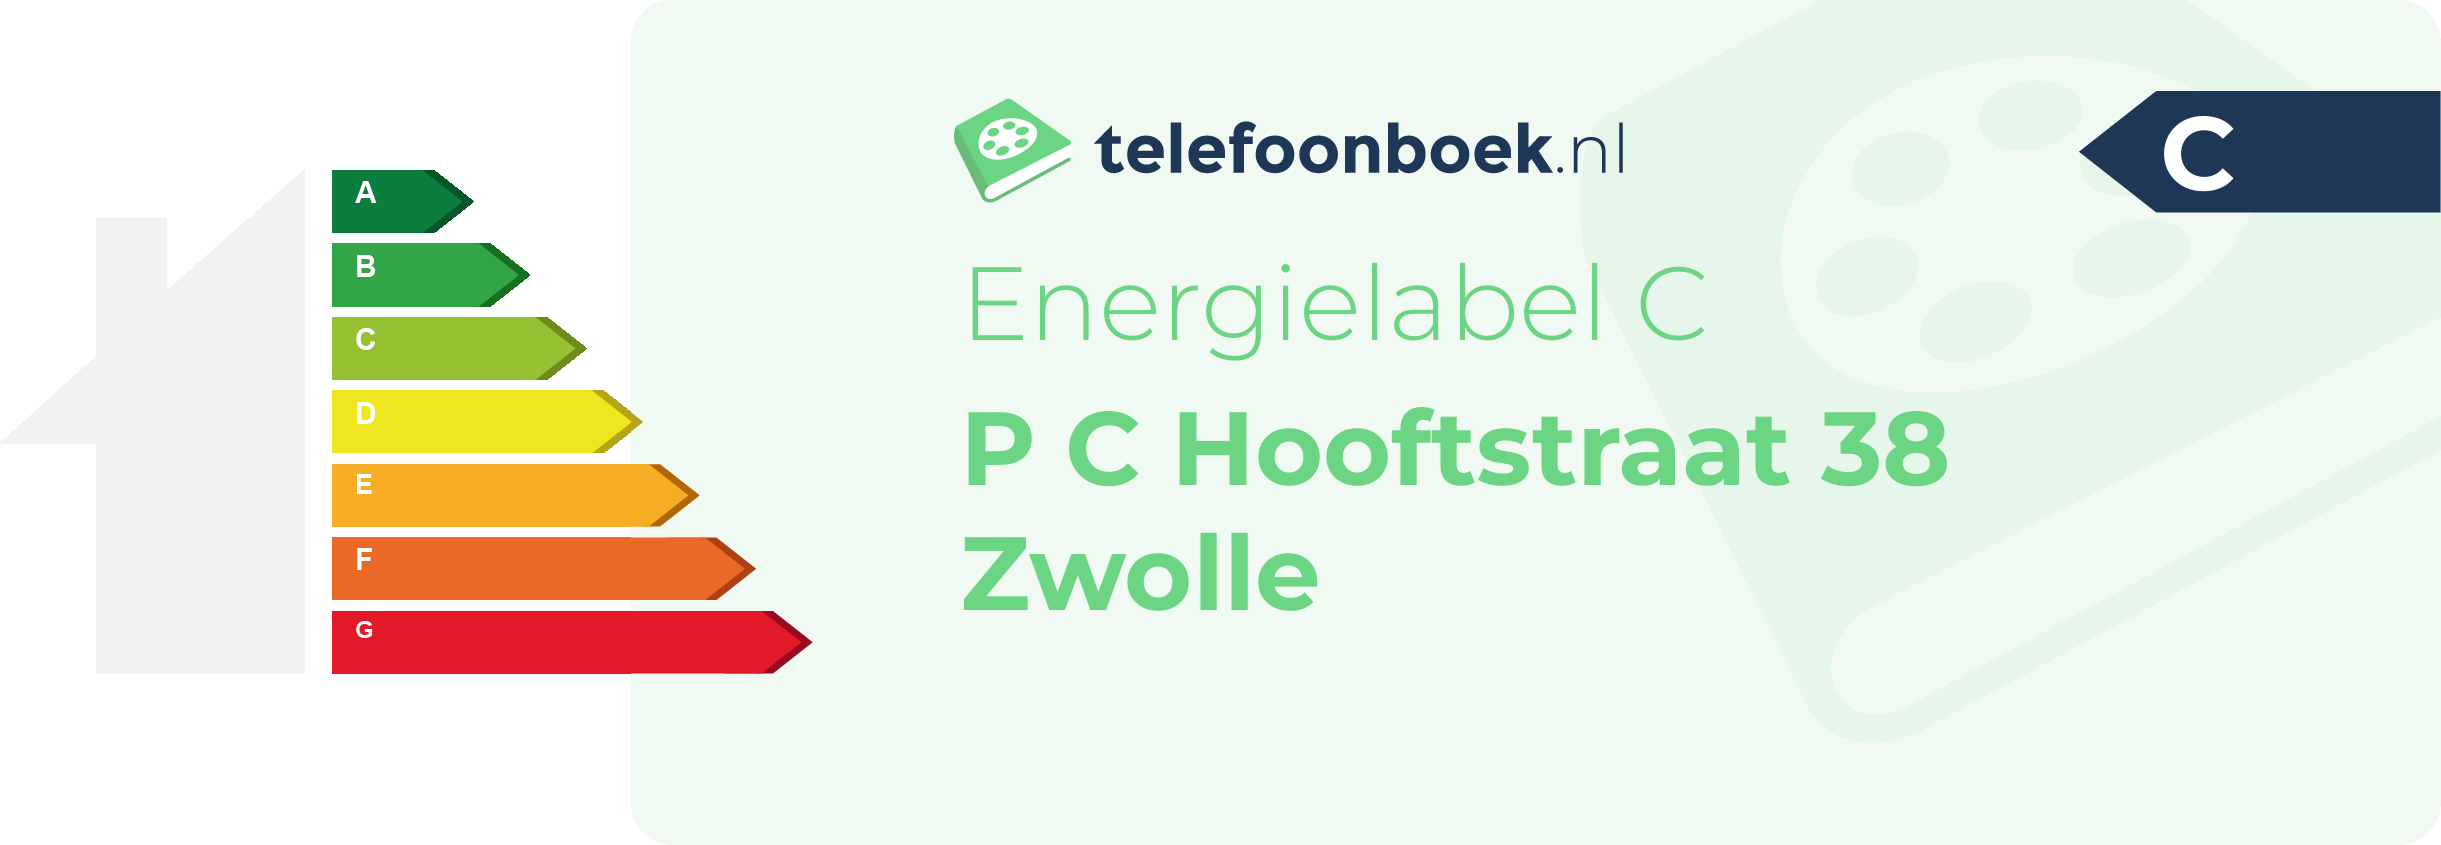 Energielabel P C Hooftstraat 38 Zwolle